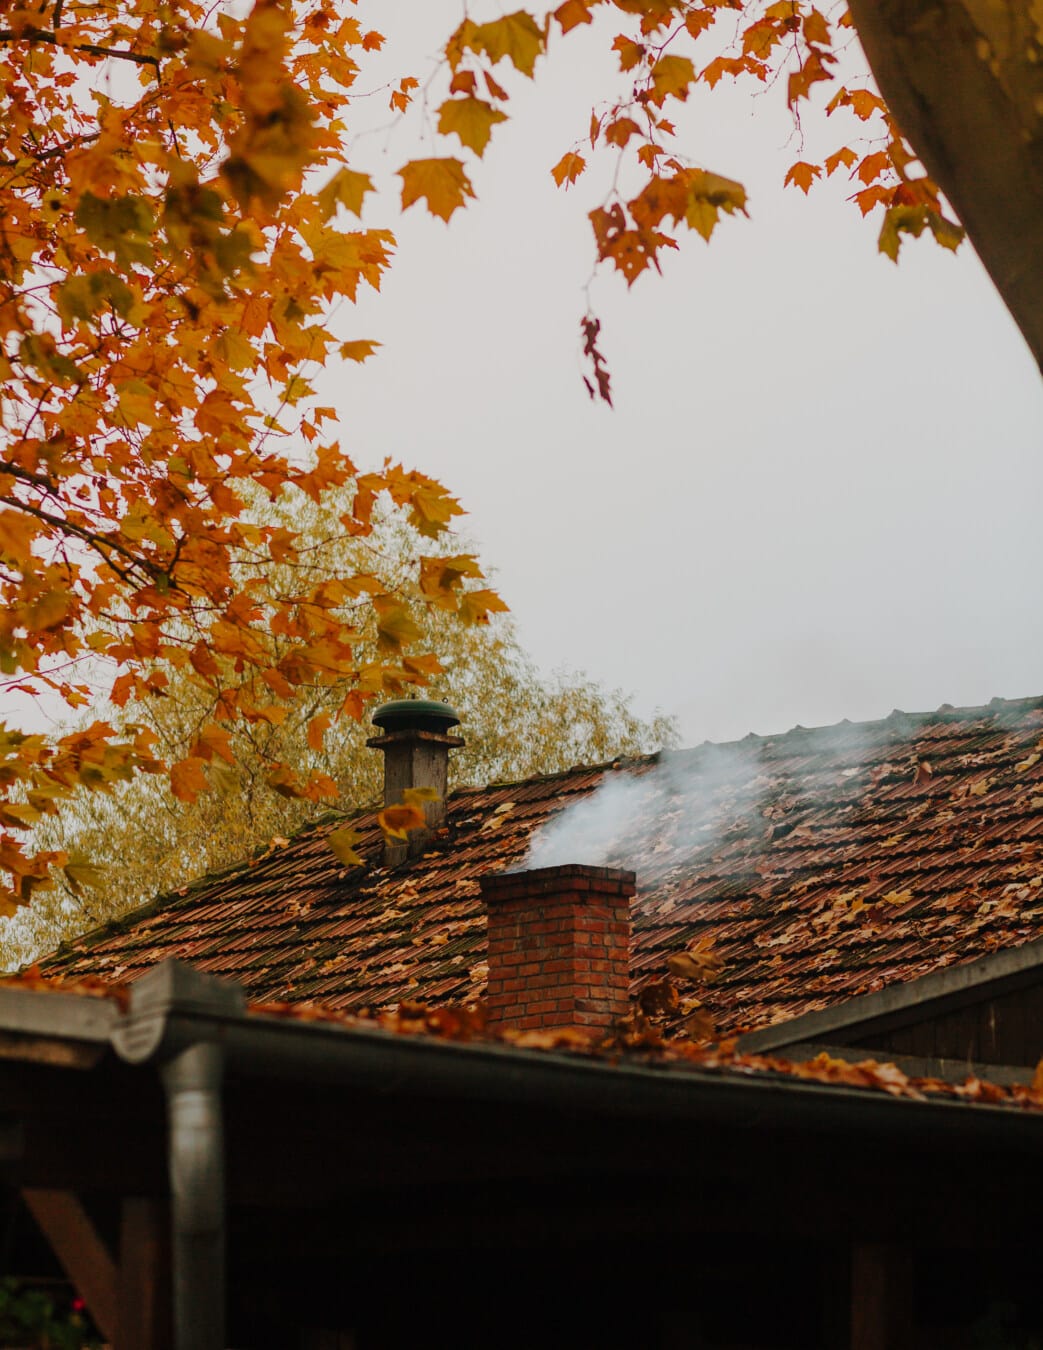 дым, дымоход, осенний сезон, крыша, крыша, холод, Погода, дерево, дом, лист